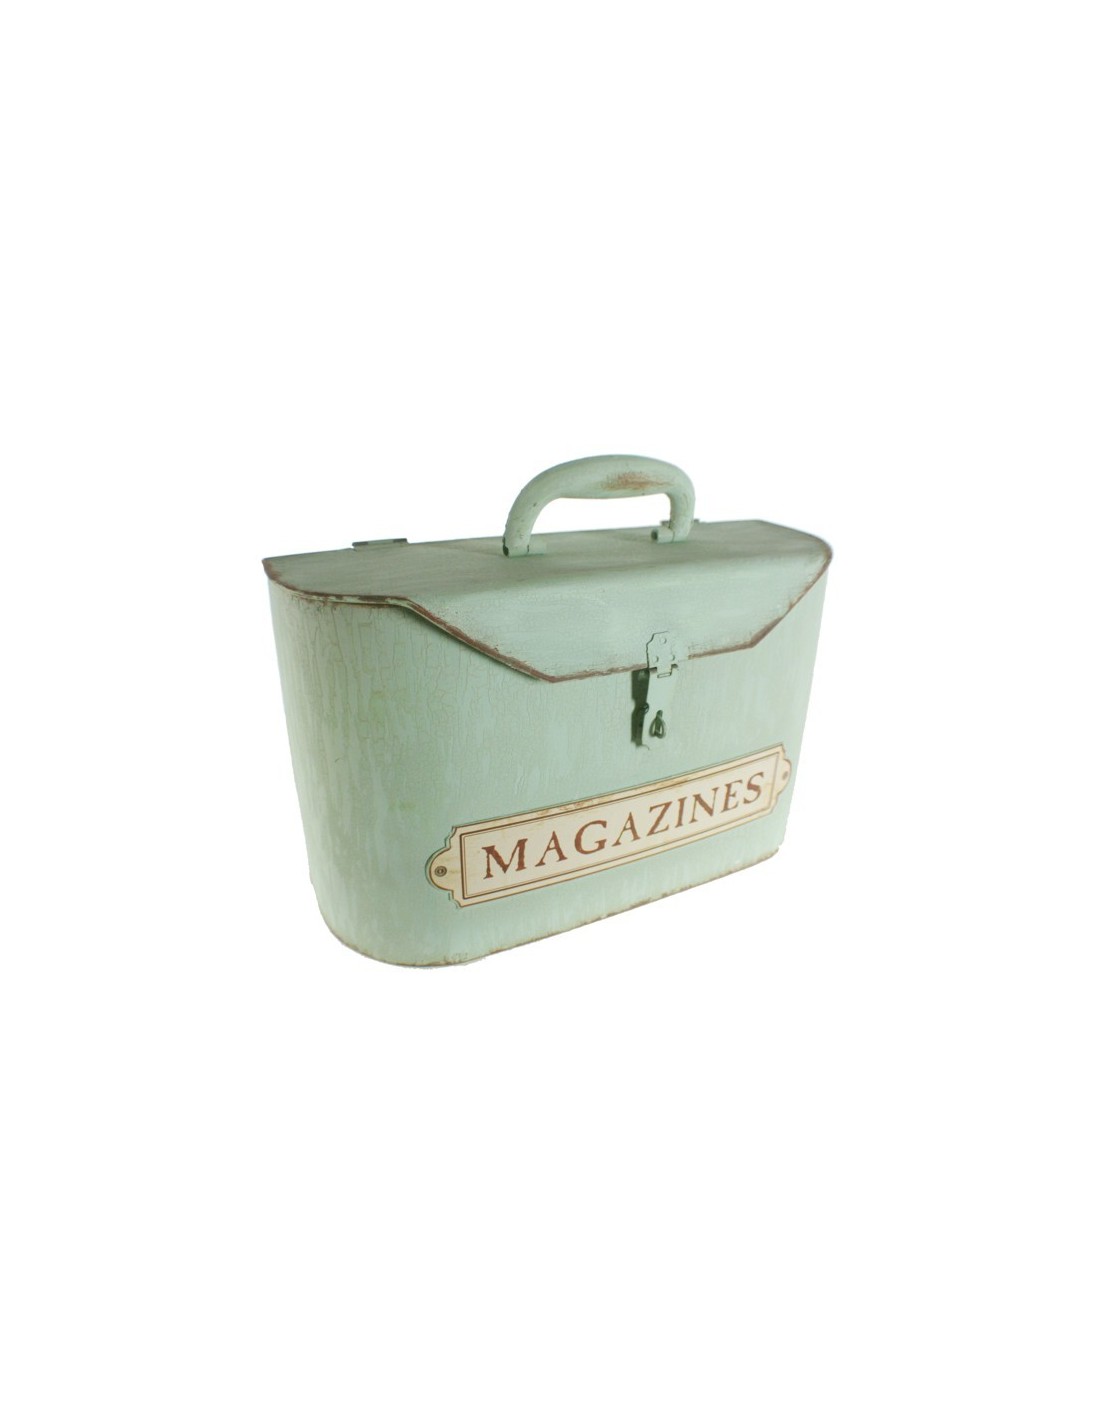 Caixa forma de maleta revister de metall estil vintage per guardar i emmagatzemar estil retro color verd